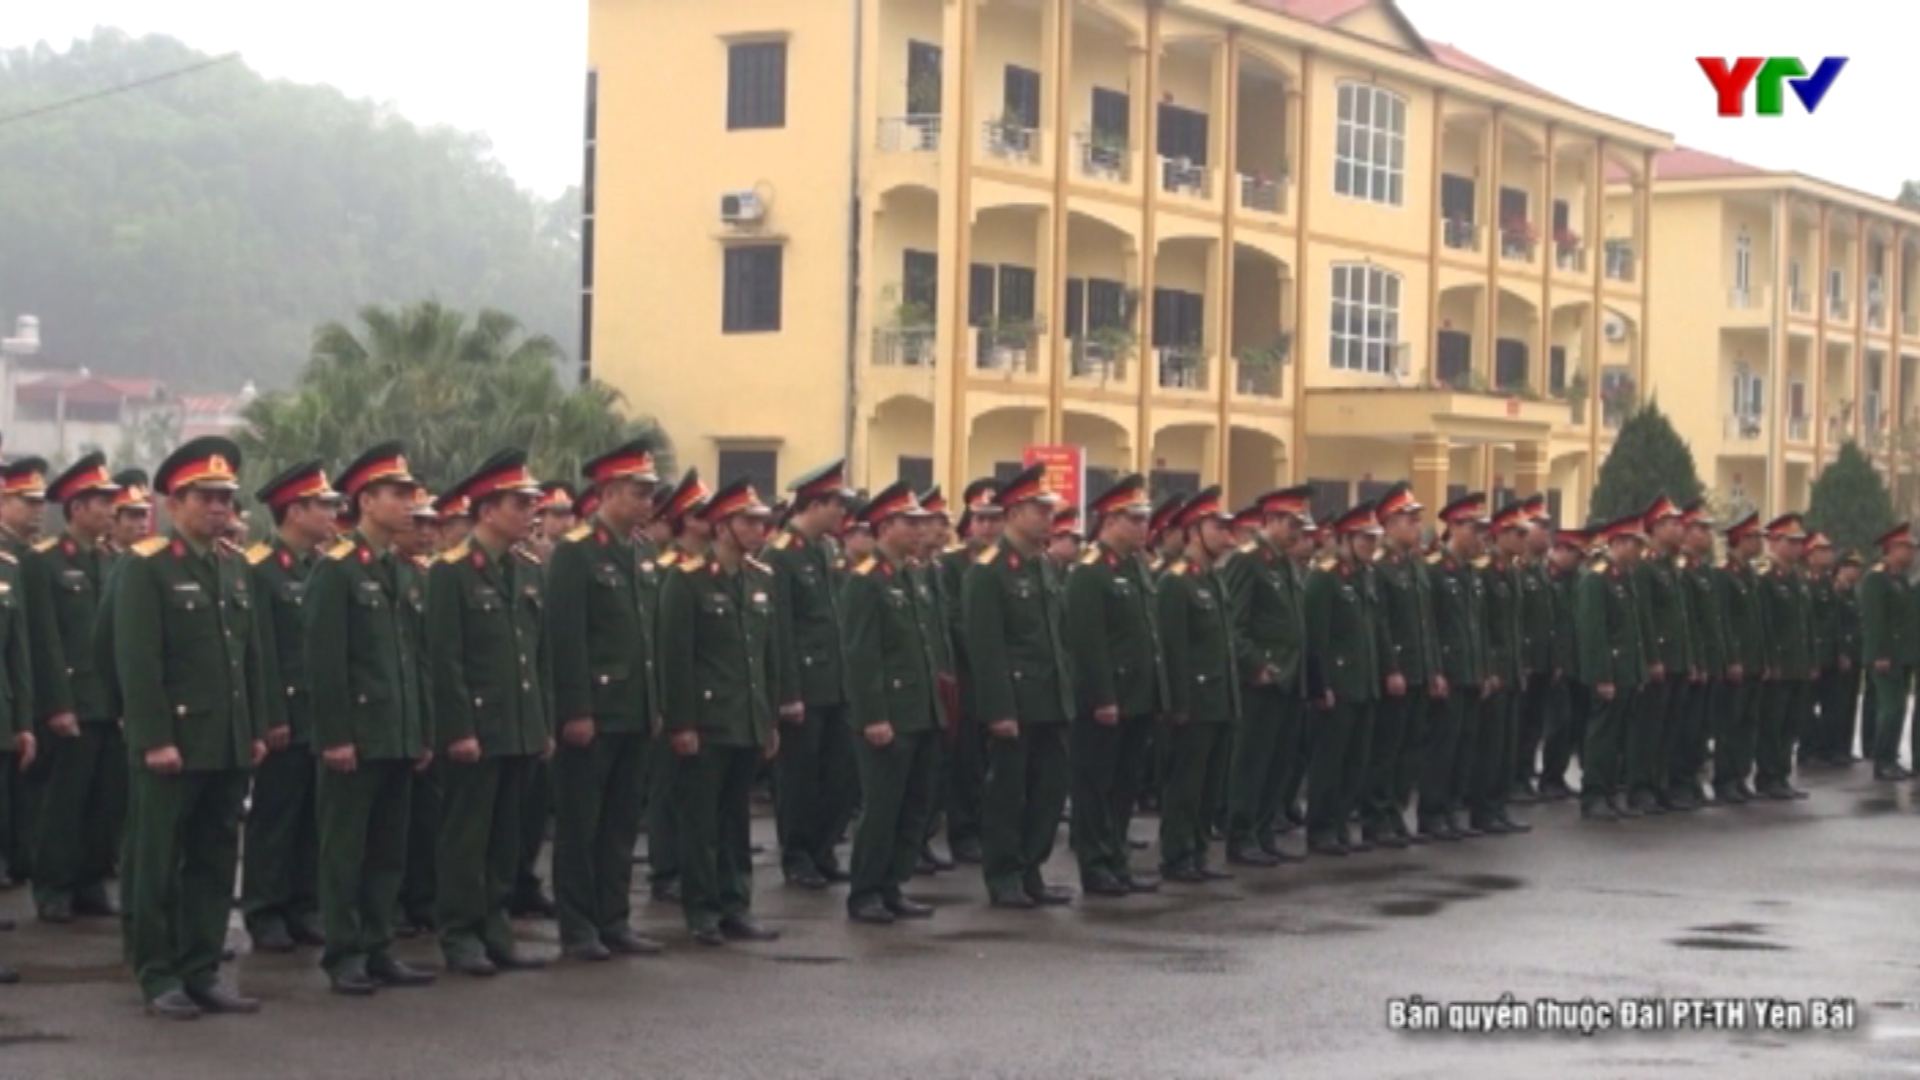 Bộ CHQS tỉnh quán triệt nhiệm vụ huấn luyện chiến đấu năm 2020